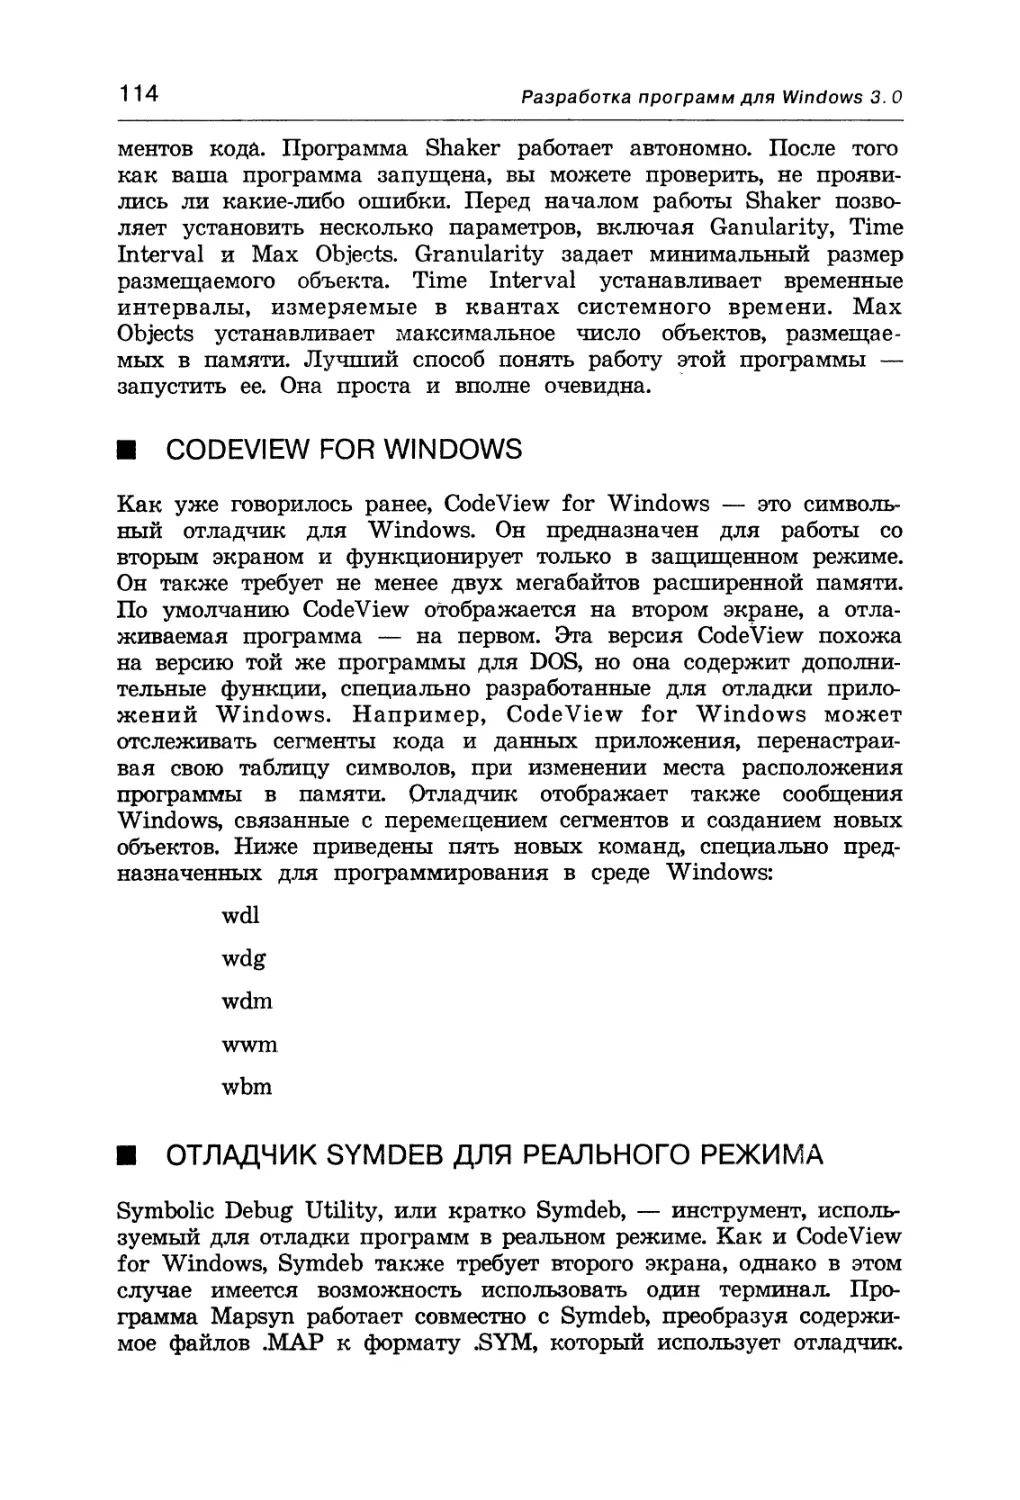 CodeView for Windows
Отладчик Symdeb для реального режима